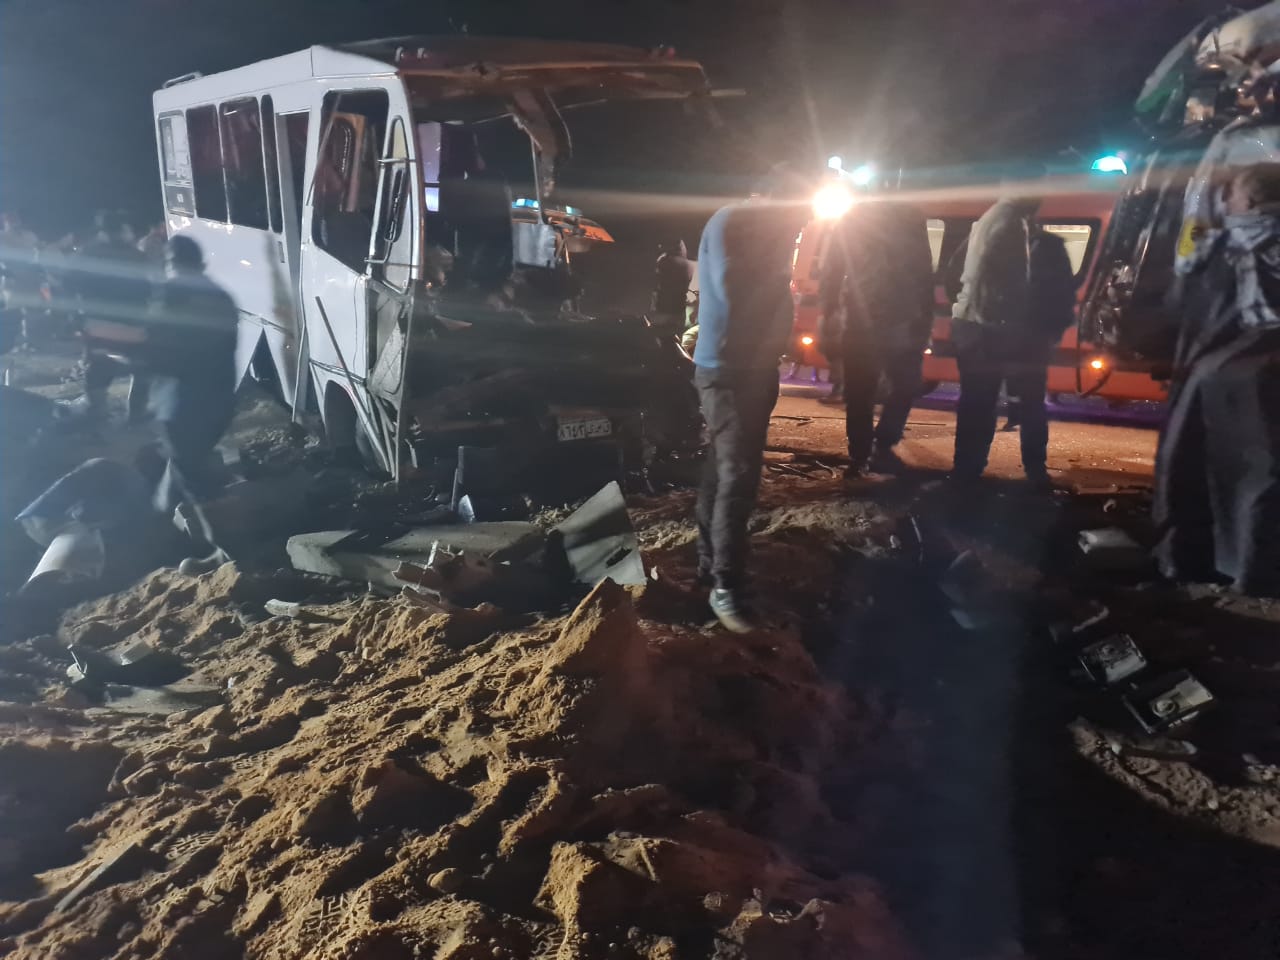       لقى 3 أشخاص مصرعهم وأصيب 23 آخرون في حادث تصادم بين أتوبيس ركاب مع شاحنة على طريق 